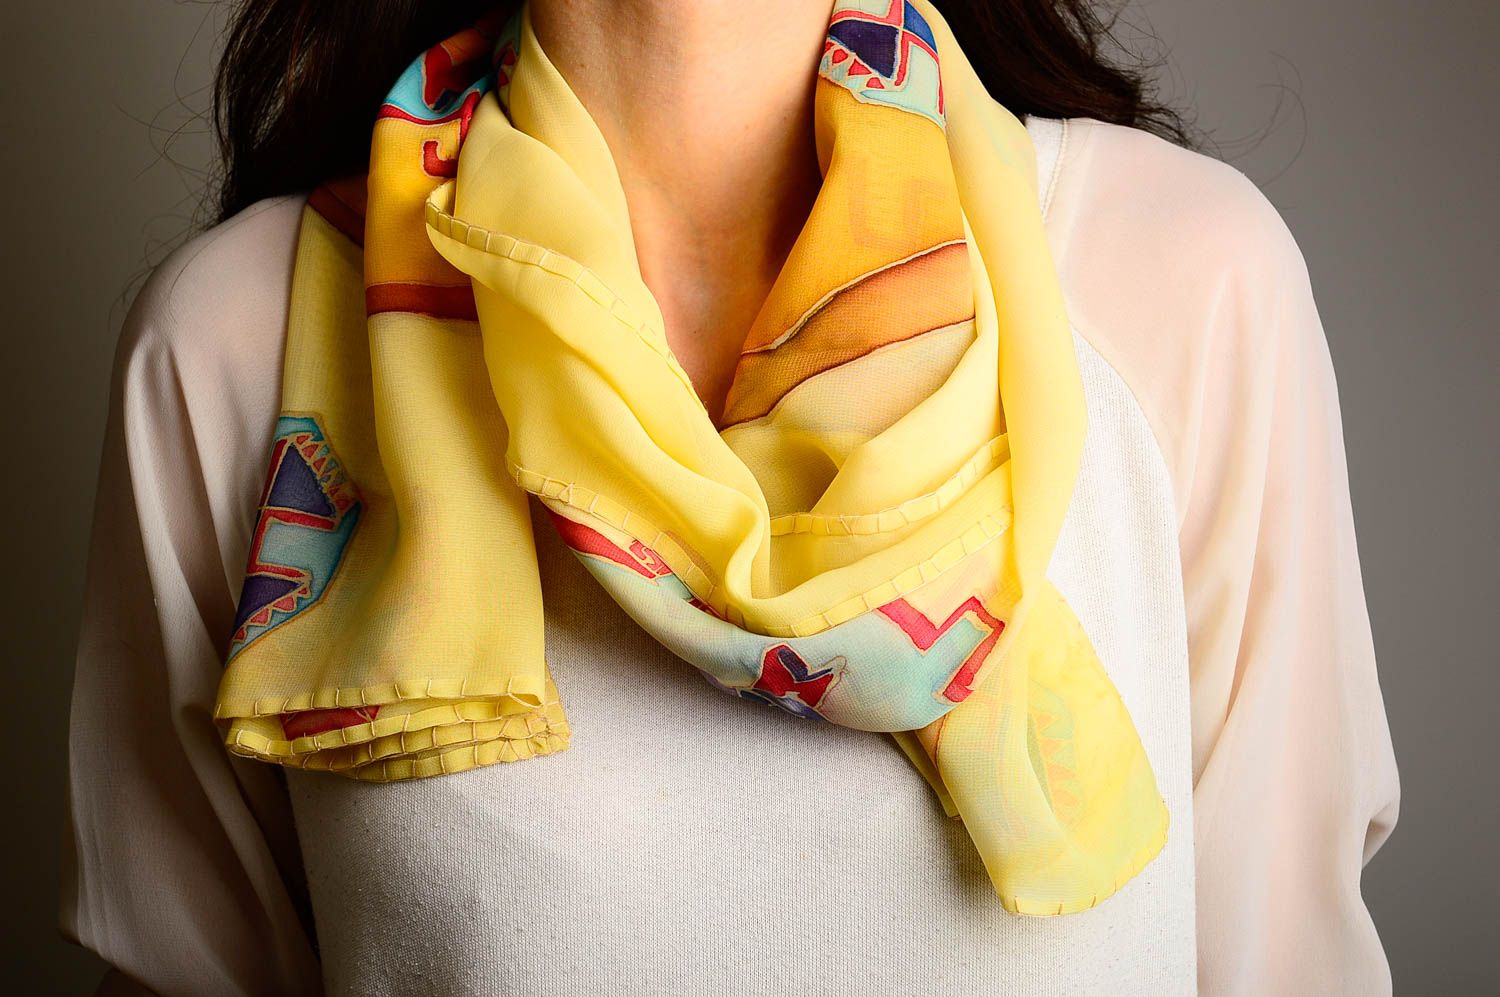 Unusual handmade chiffon scarf stylish women outfit batik ideas small gifts photo 1